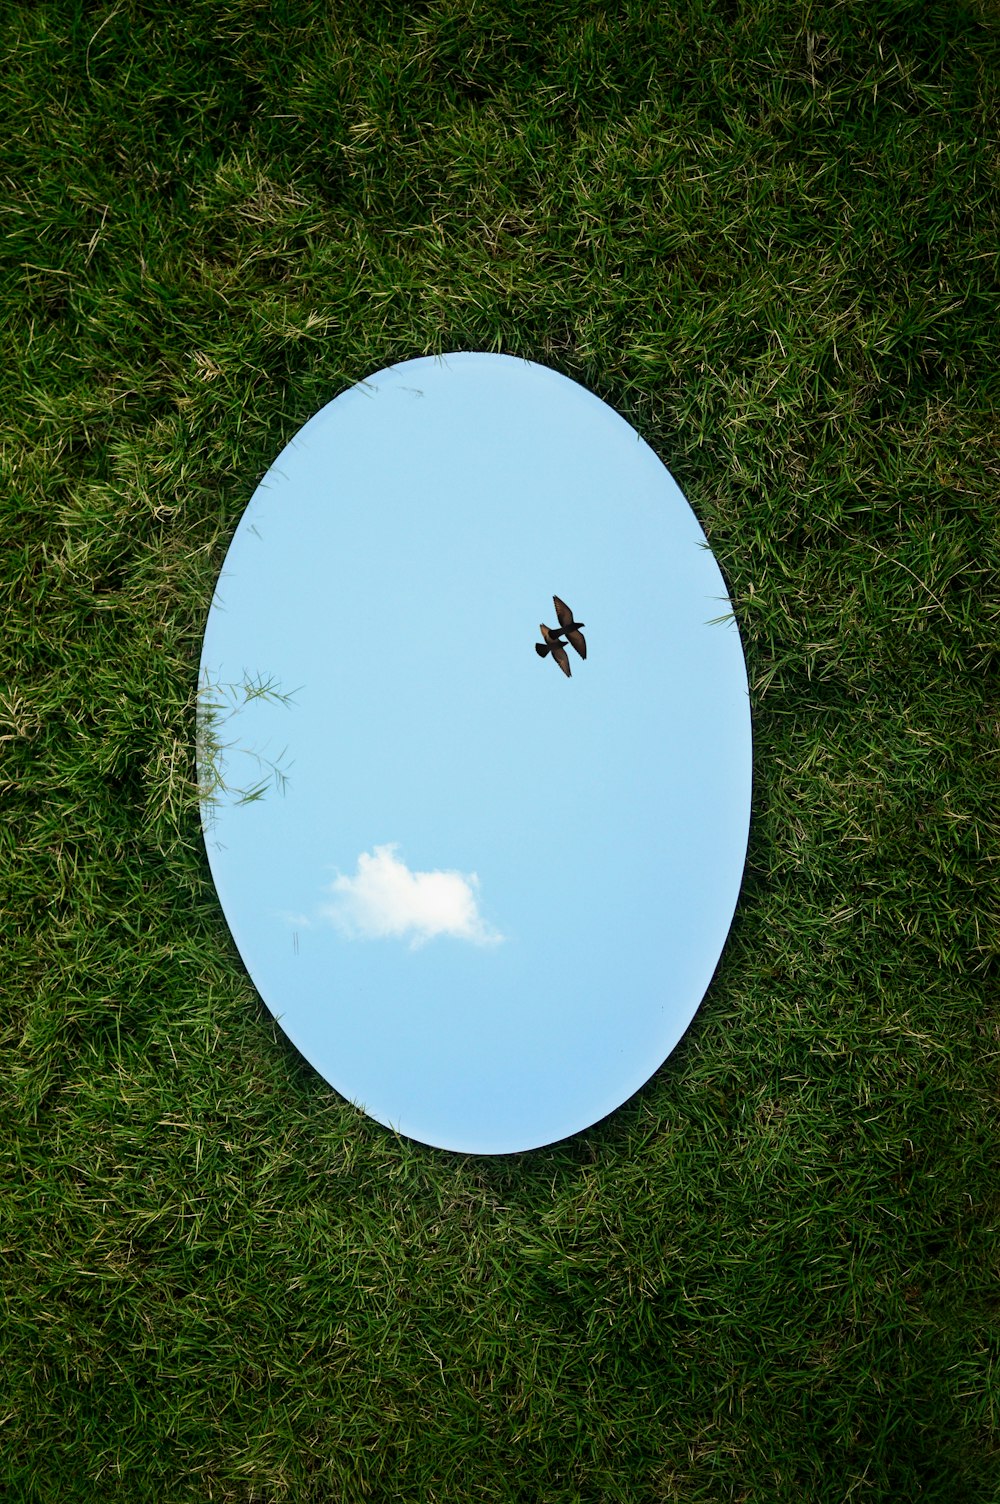 円形の鏡を通して空を飛ぶ鳥